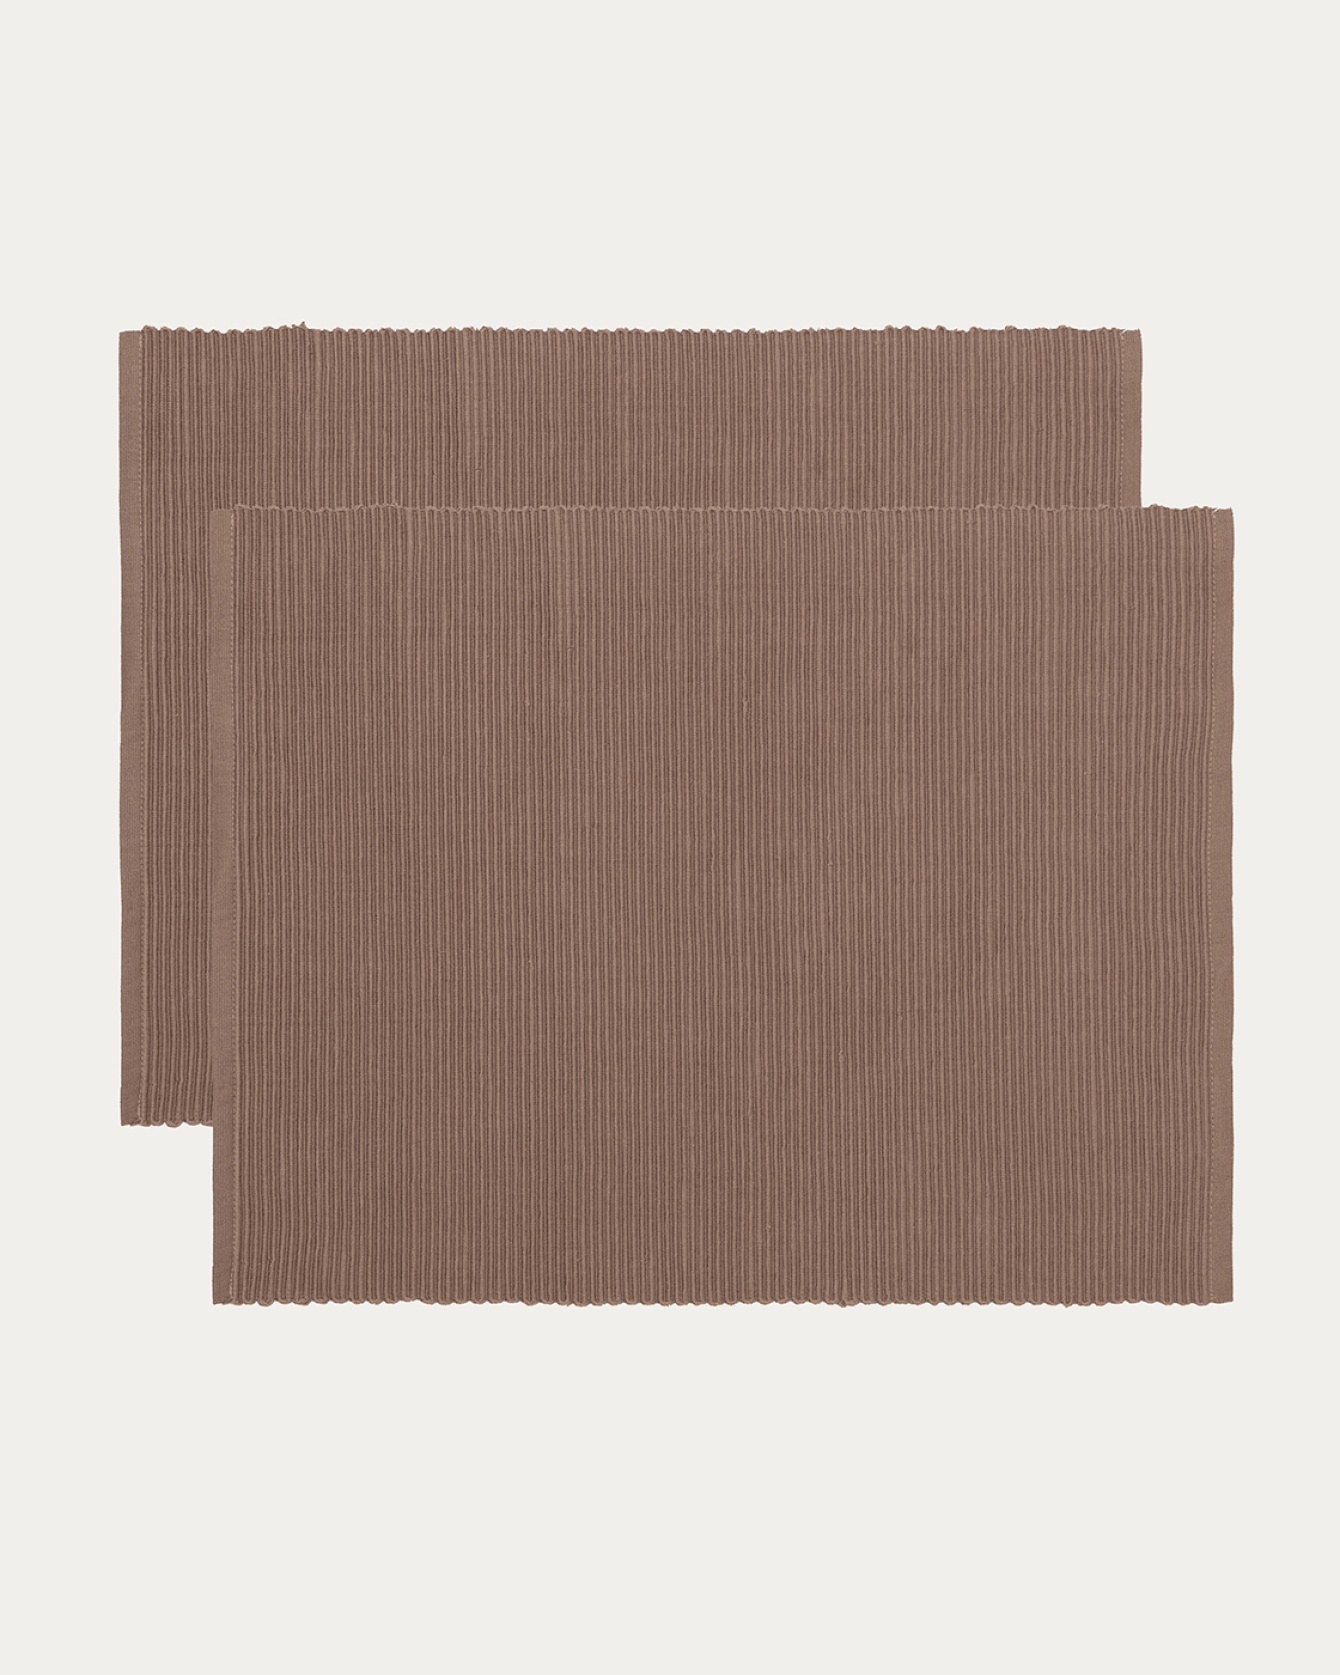 Produktbild dunkles taupe UNI Tischset aus weicher Baumwolle in Rippenqualität von LINUM DESIGN. Größe 35x46 cm und in 2er-Pack verkauft.